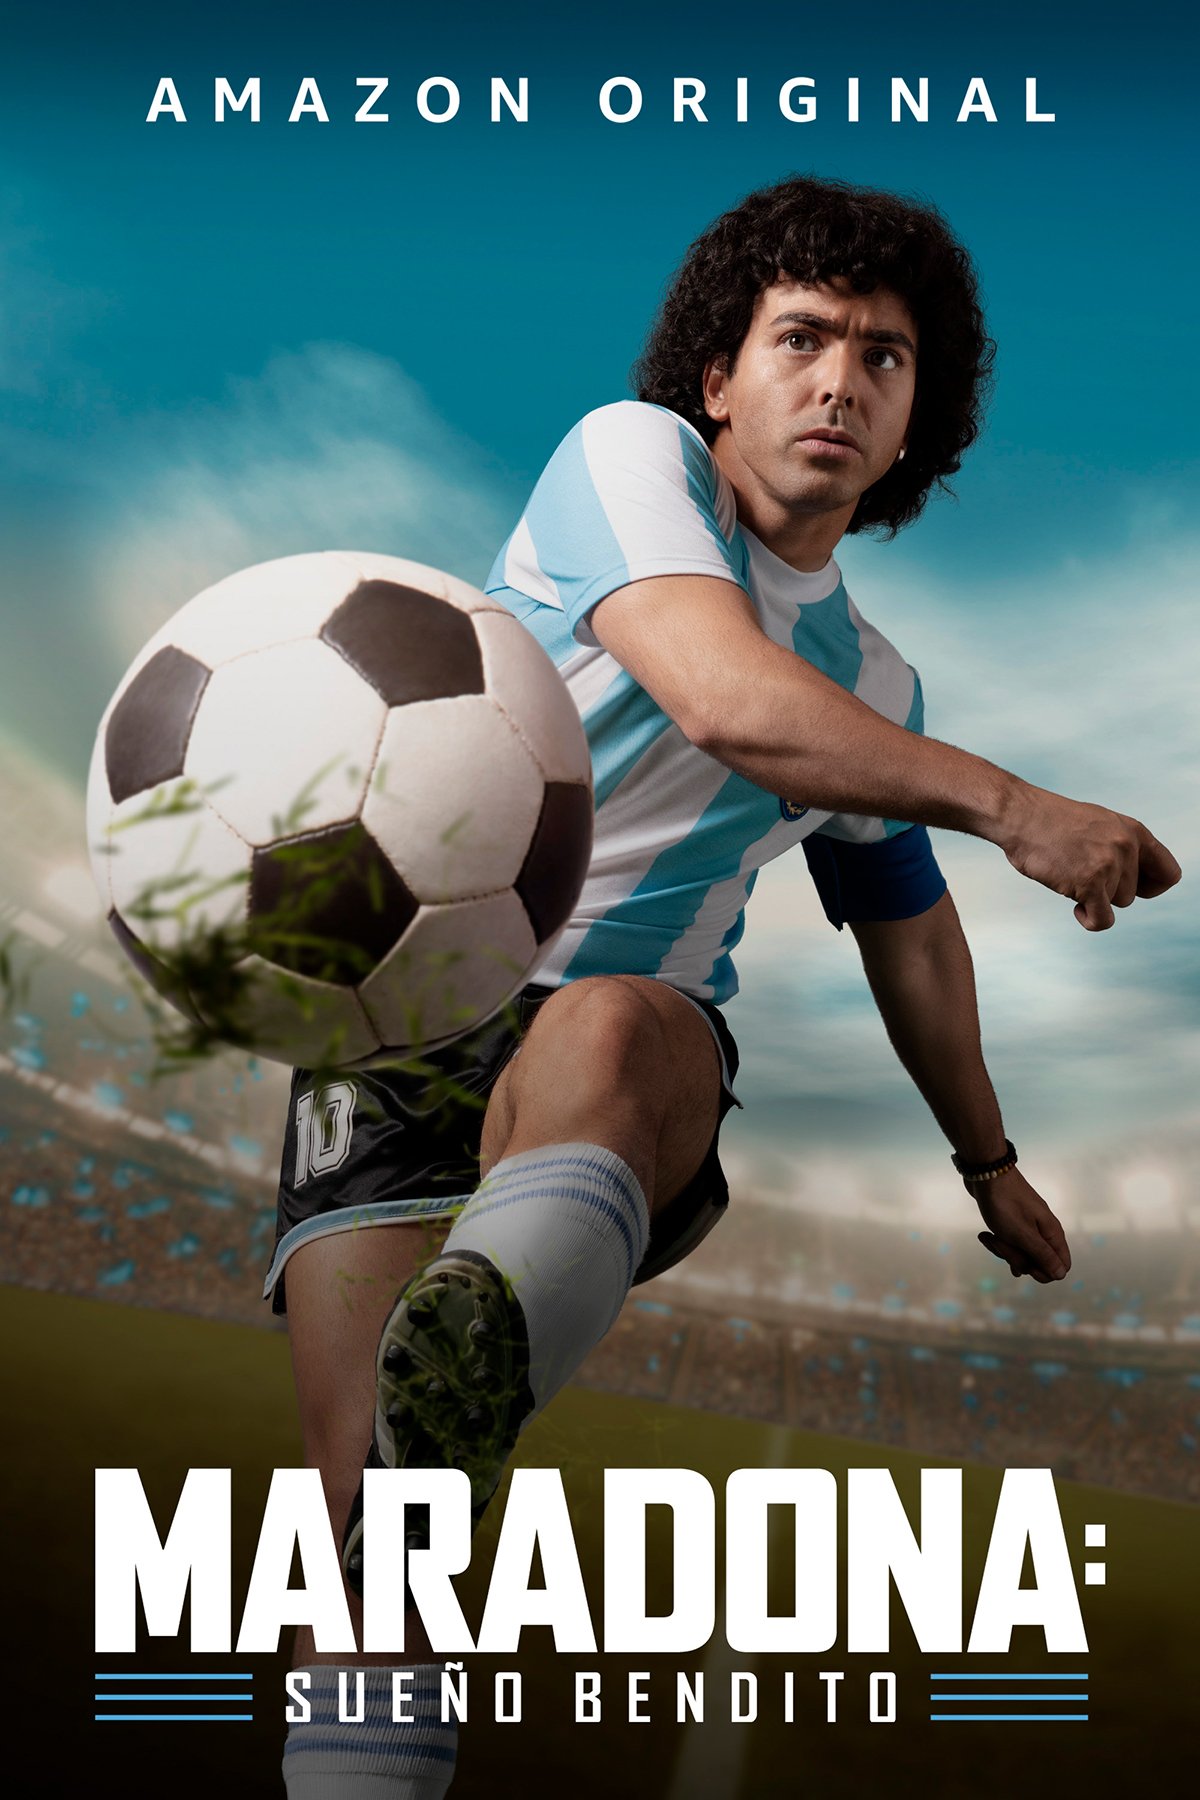 Maradona Sueño bendito